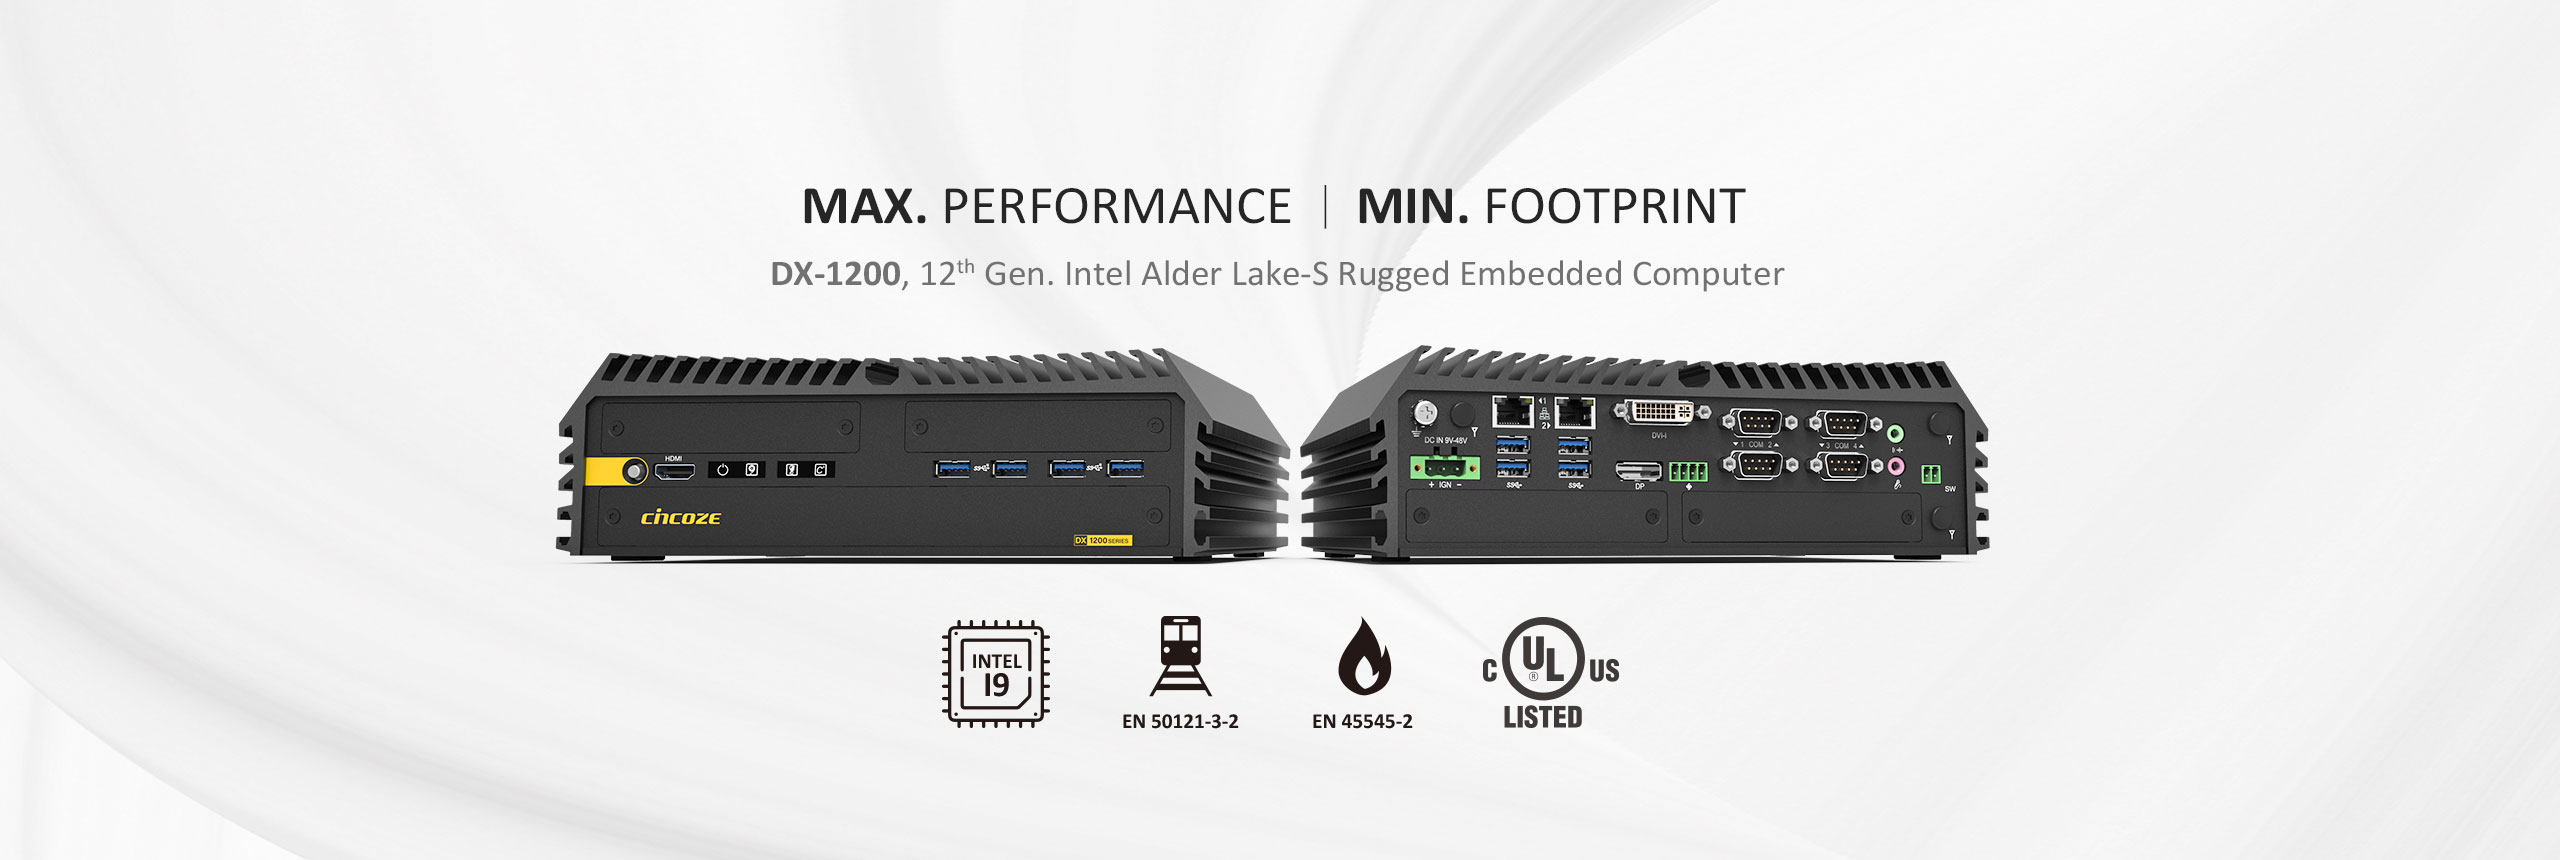 德承发布全新高效紧凑型嵌入式工业电脑 DX-1200，为工控领域增添生力军